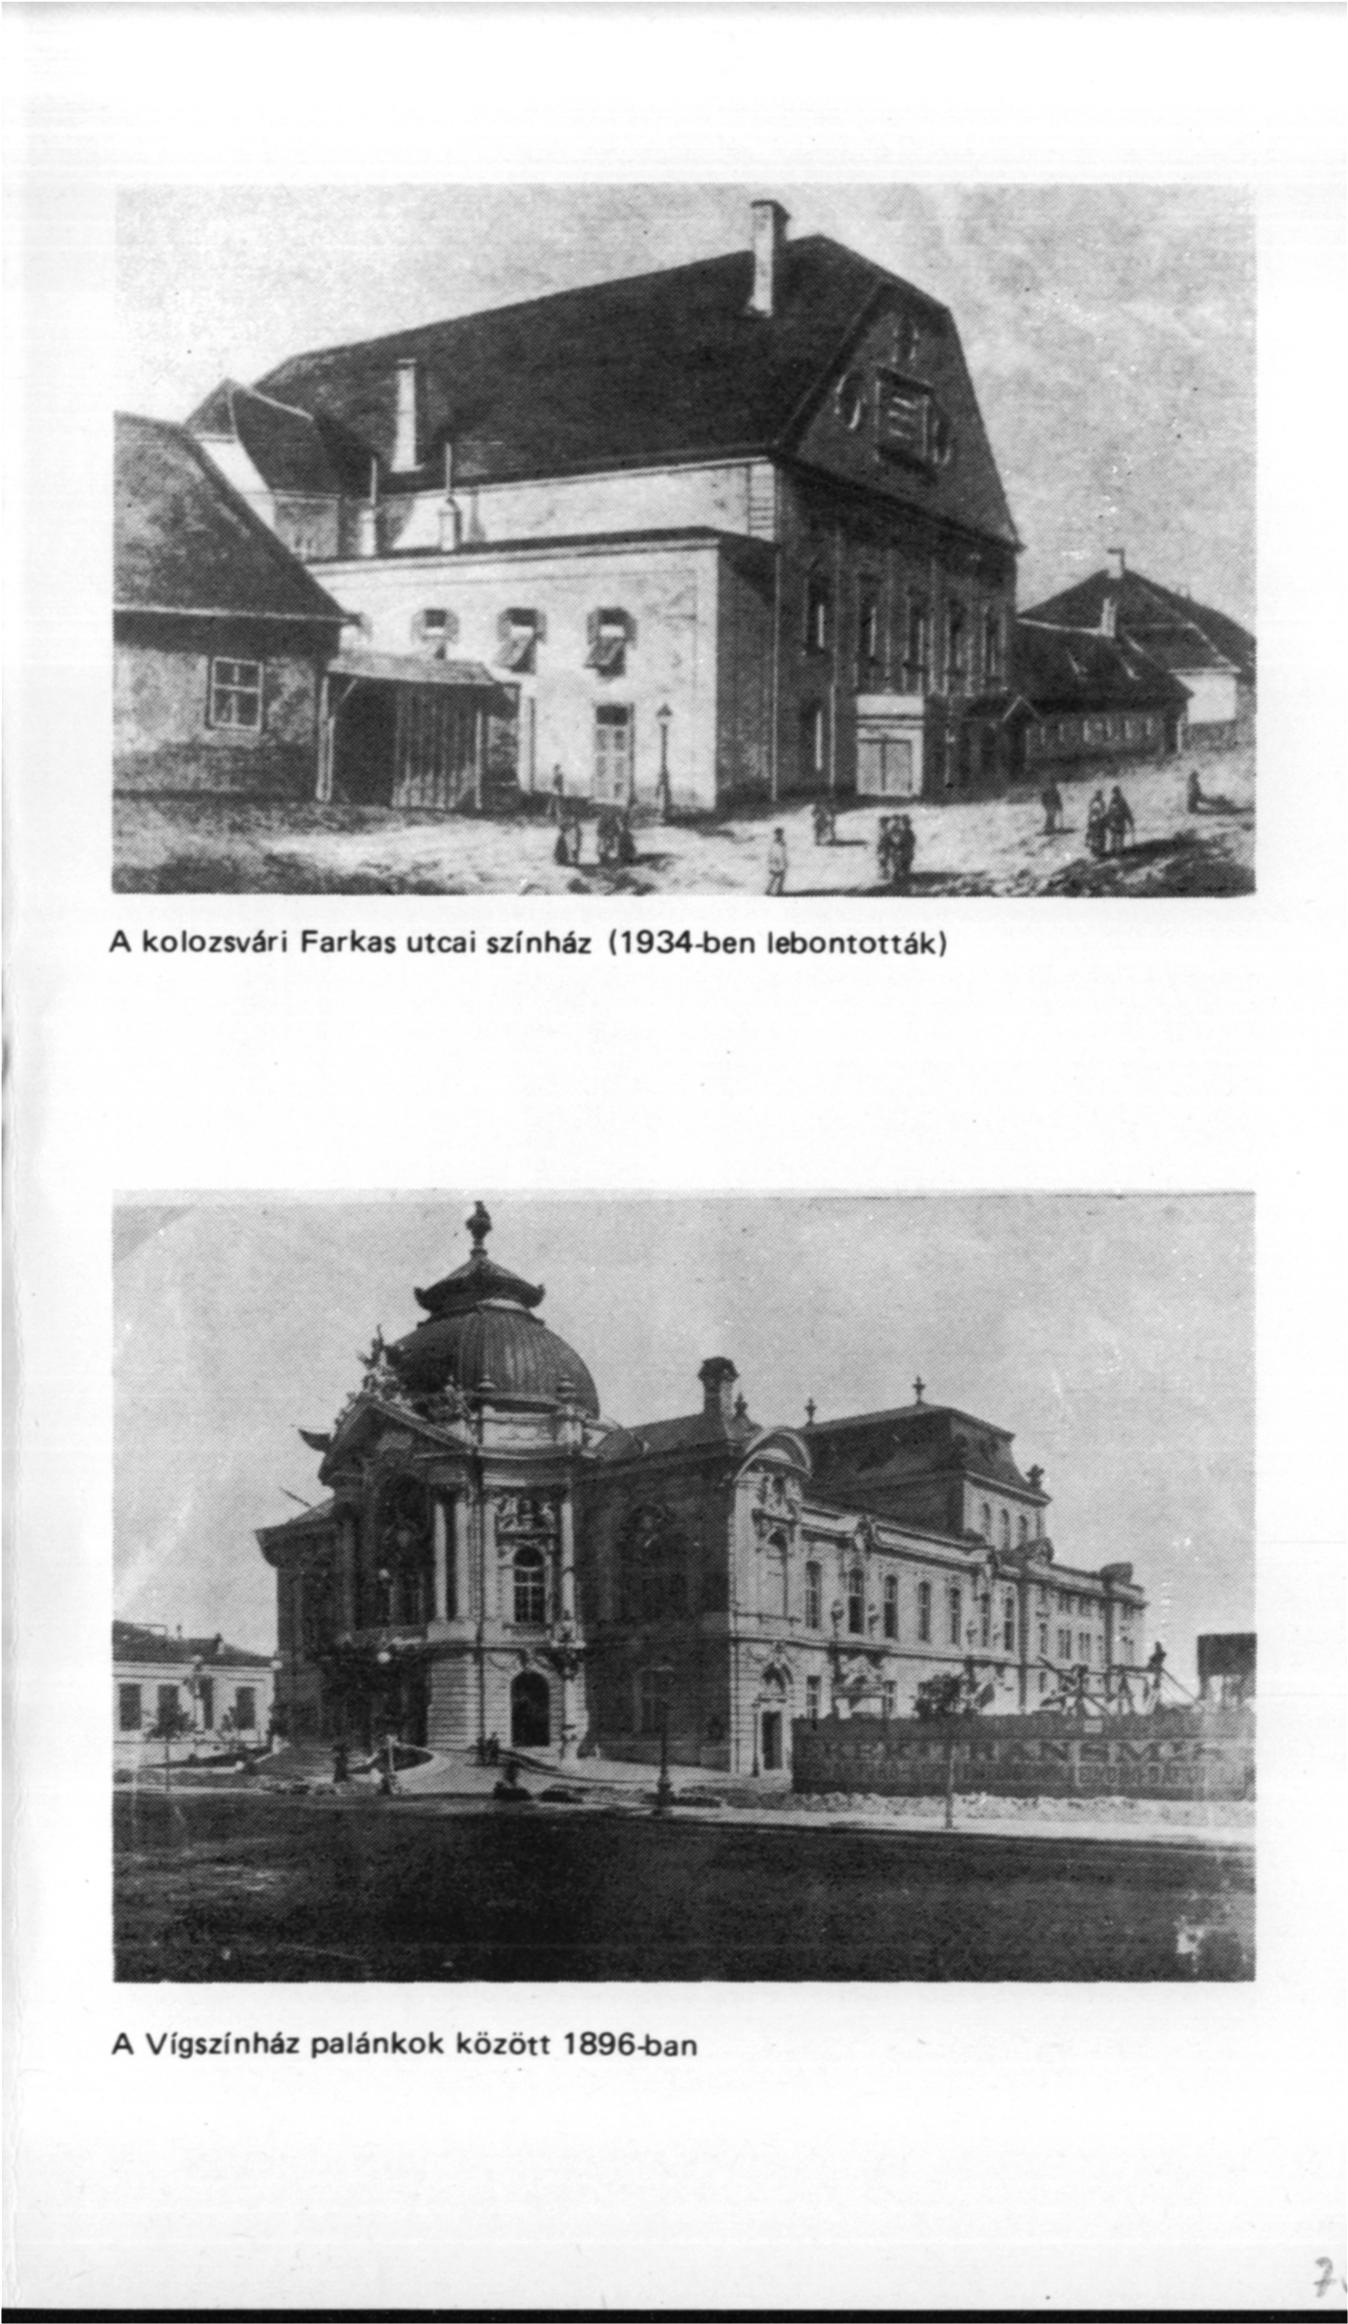 A kolozsvári Farkas utcai színház (1934-ben